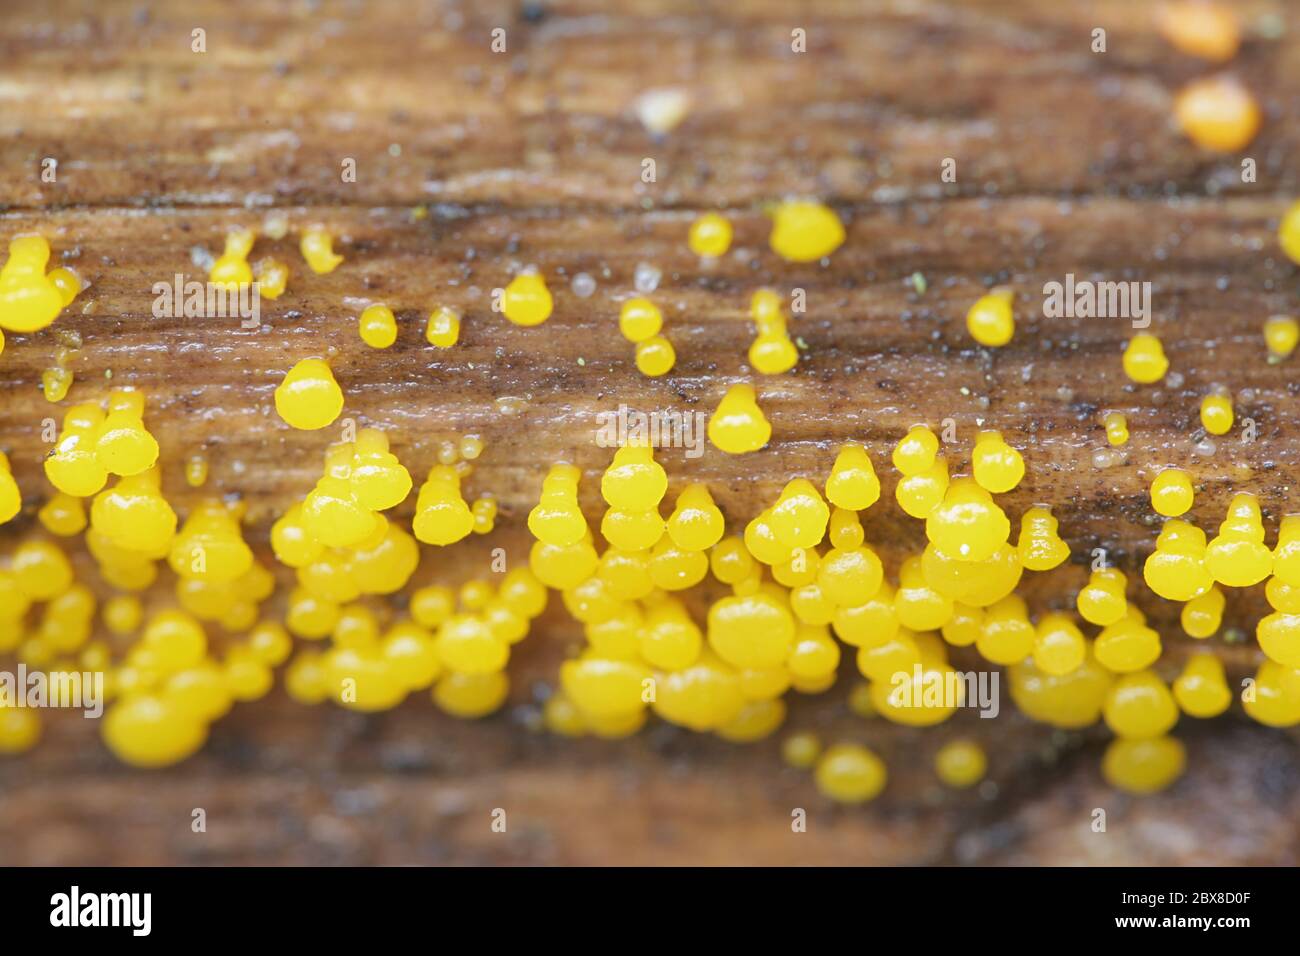 Dacrymyces capitatus, a jellyspot fungus from Finland Stock Photo